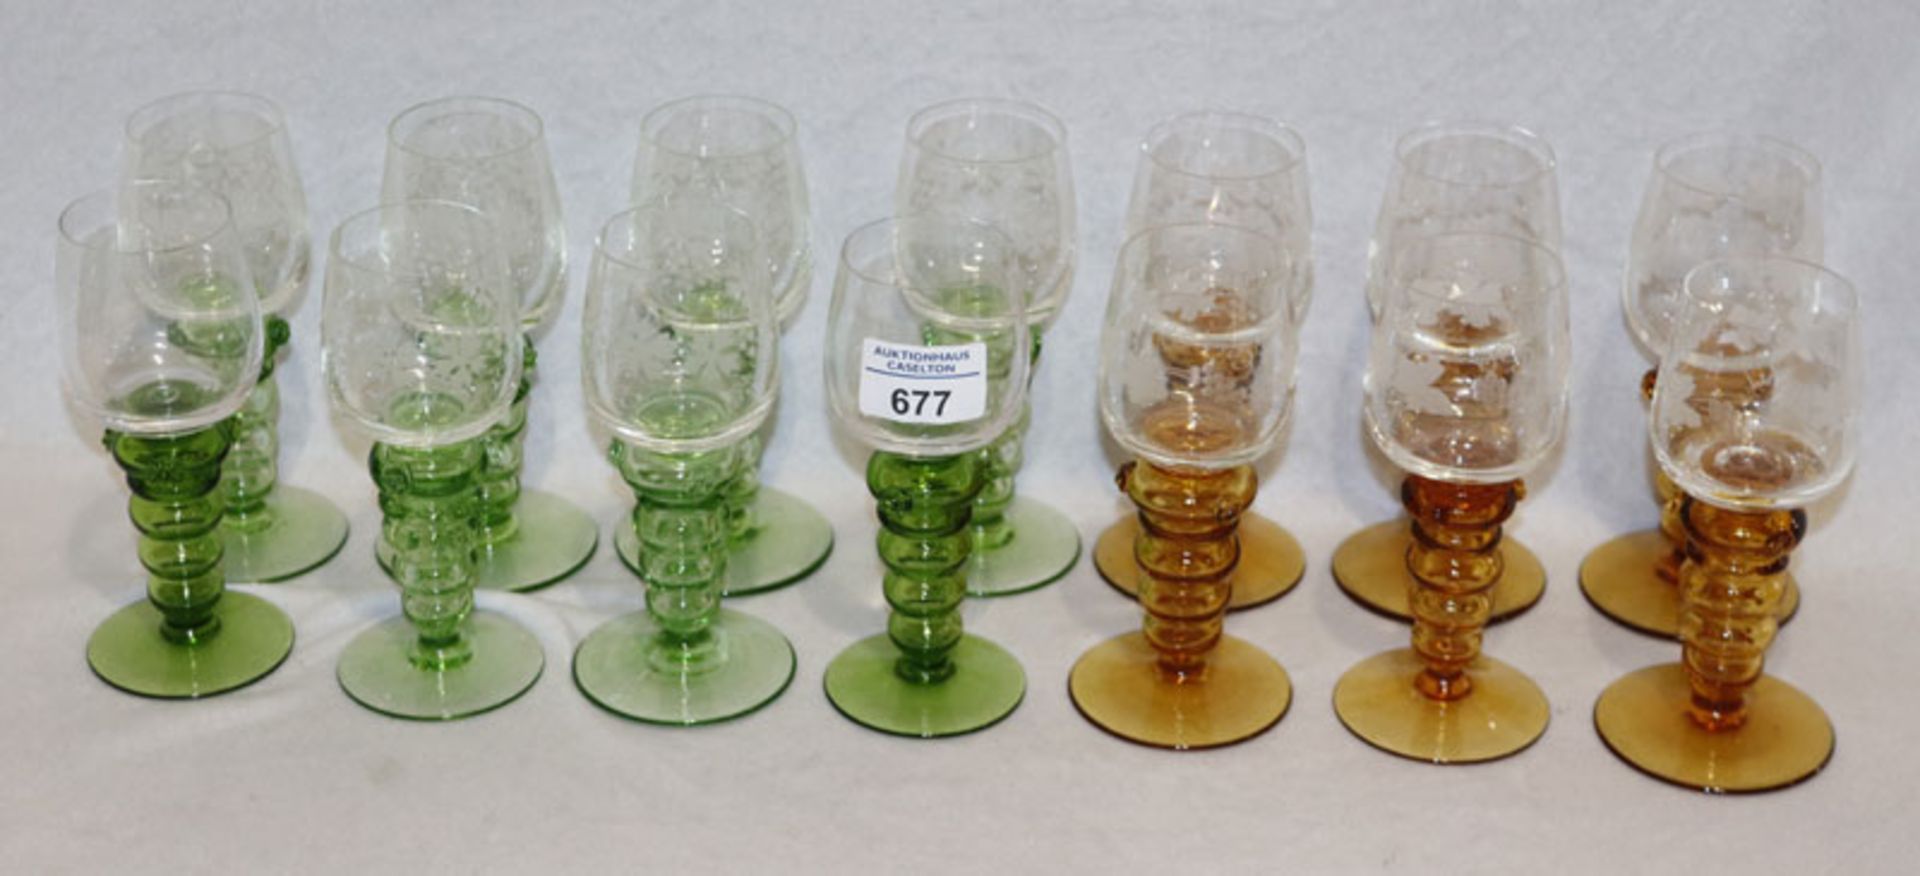 Theresienthal Weingläser: 6 Gläser mit bernsteinfarbenem Hohlfuß und klarem Kelch mit graviertem